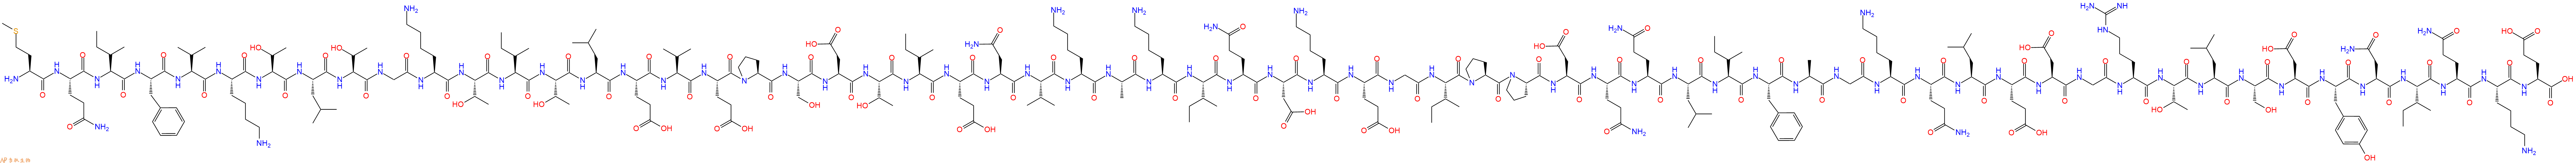 专肽生物产品Met-Gln-Ile-Phe-Val-Lys-Thr-Leu-Thr-Gly-Lys-Thr-Il